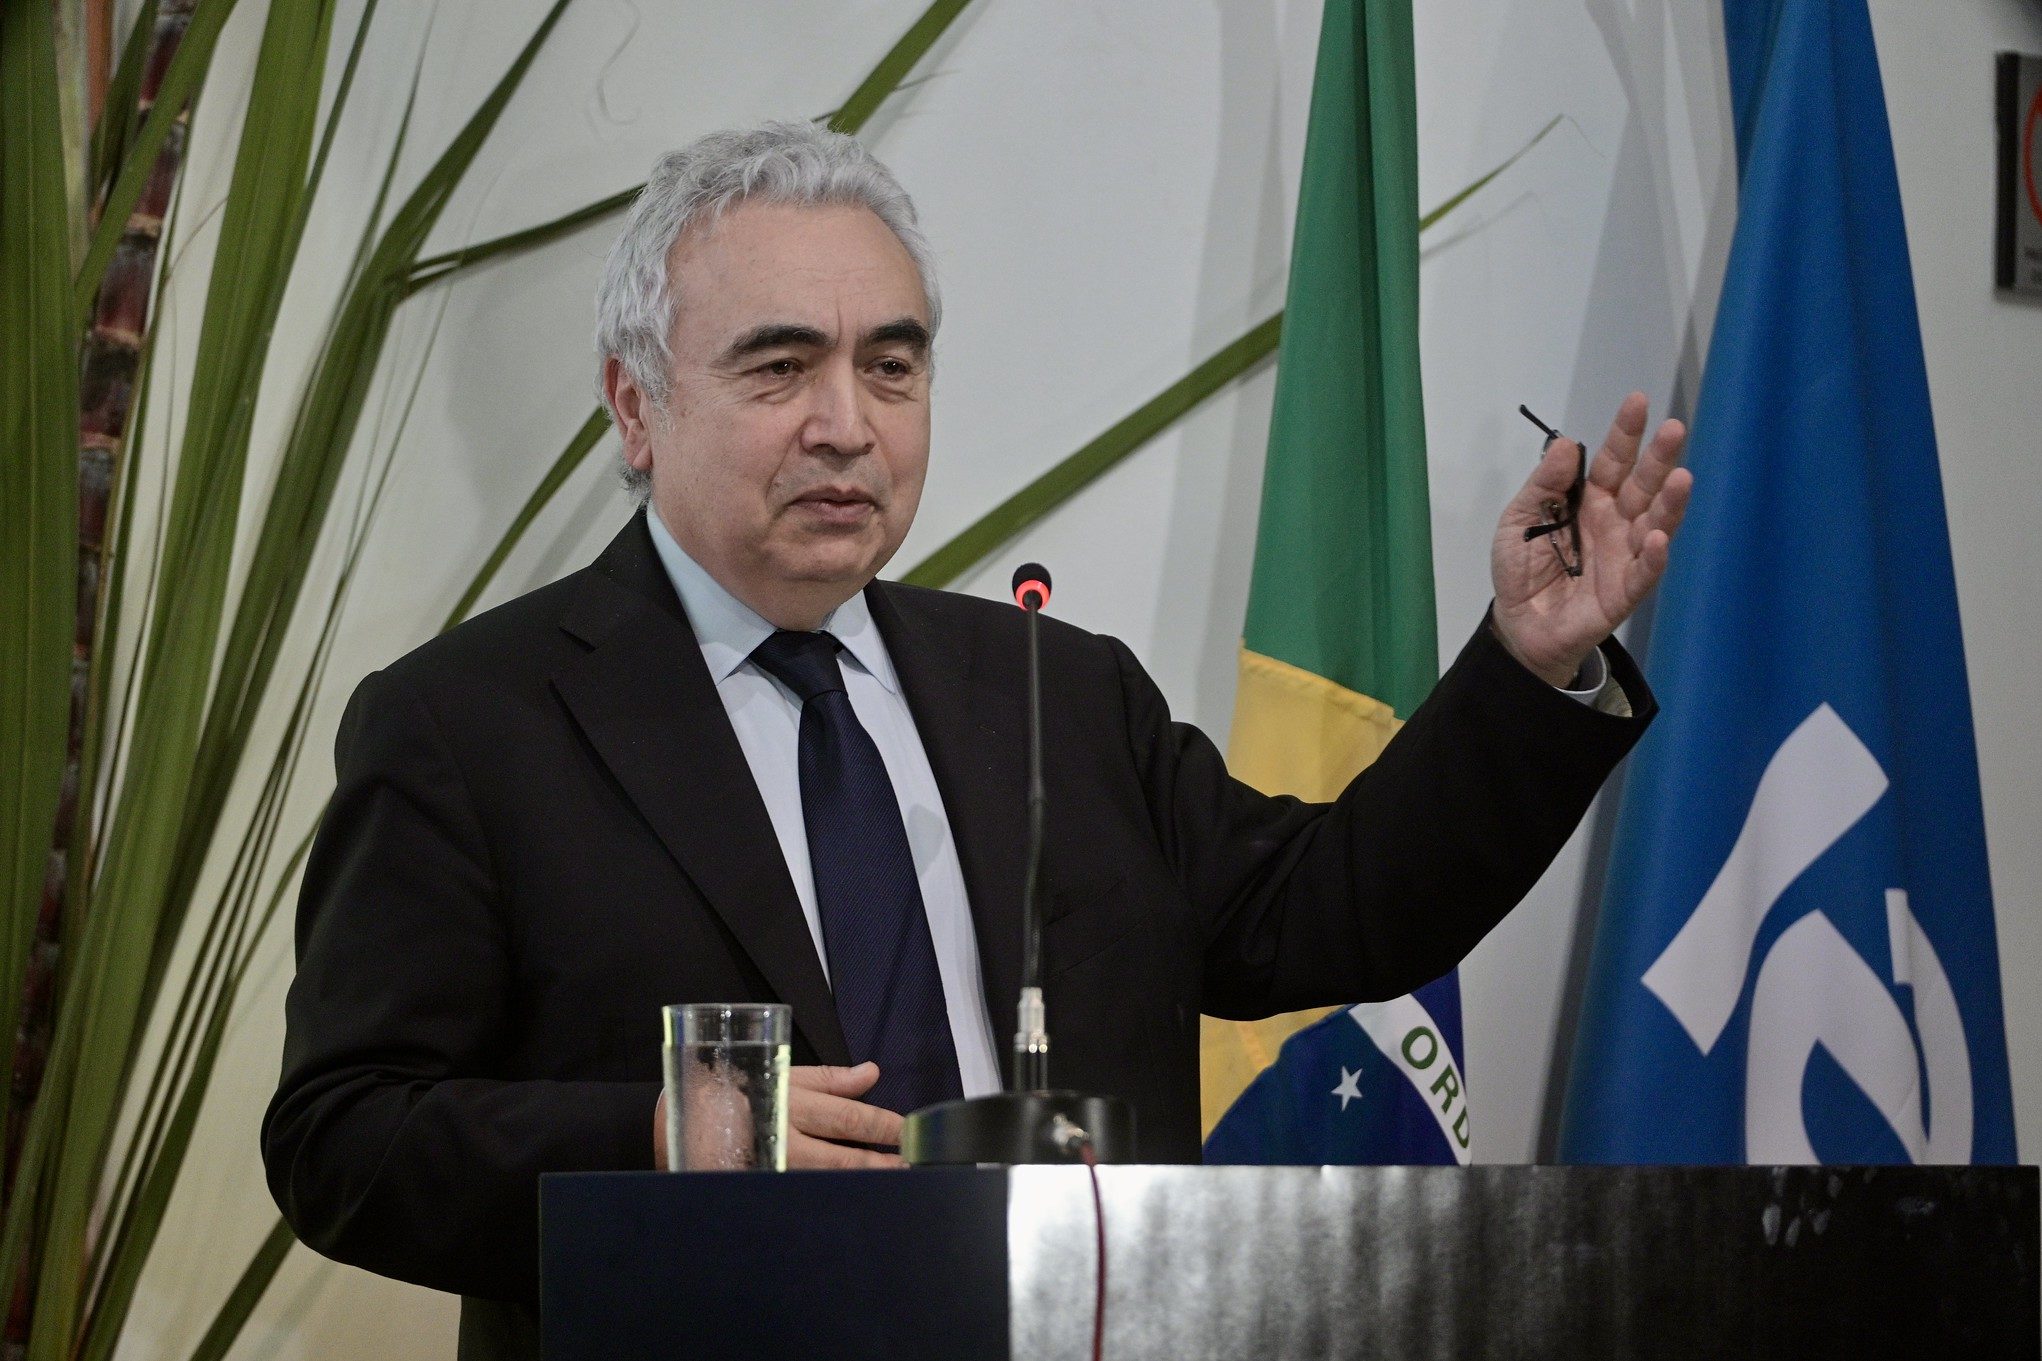 Brasil deve levar transição energética justa e bioenergia para o G20, afirma Fatih Birol, diretor executivo da IEA, nesta quarta (31/1), durante visita ao país (Foto: Ricardo Botelho/MME)